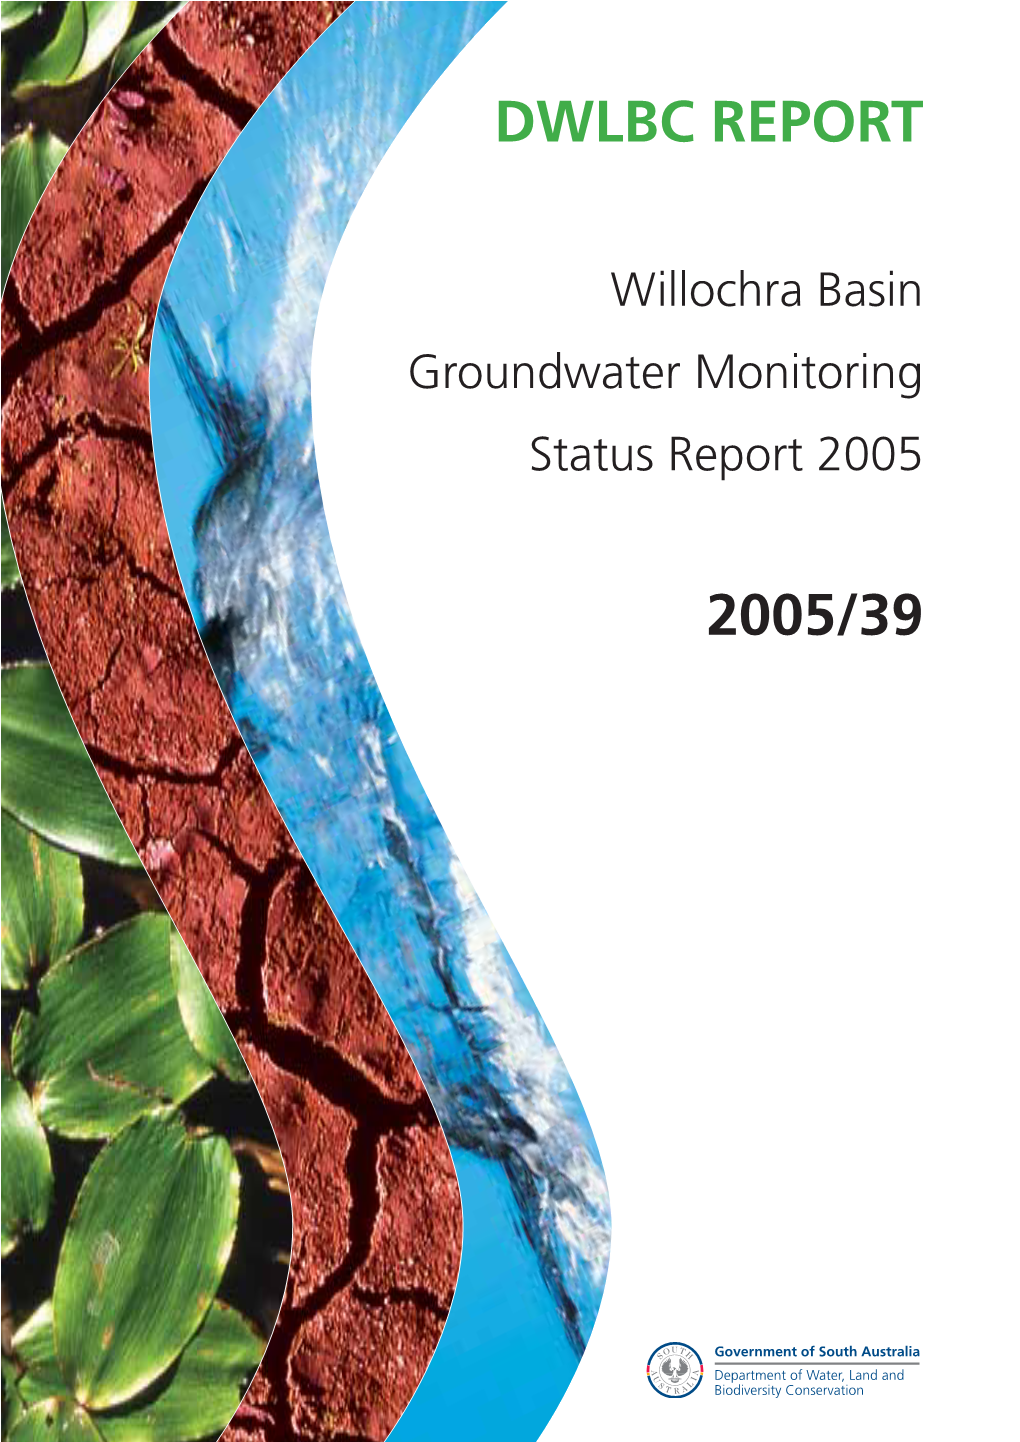 Willochra Basin Groundwater Monitoring Status Report 2005